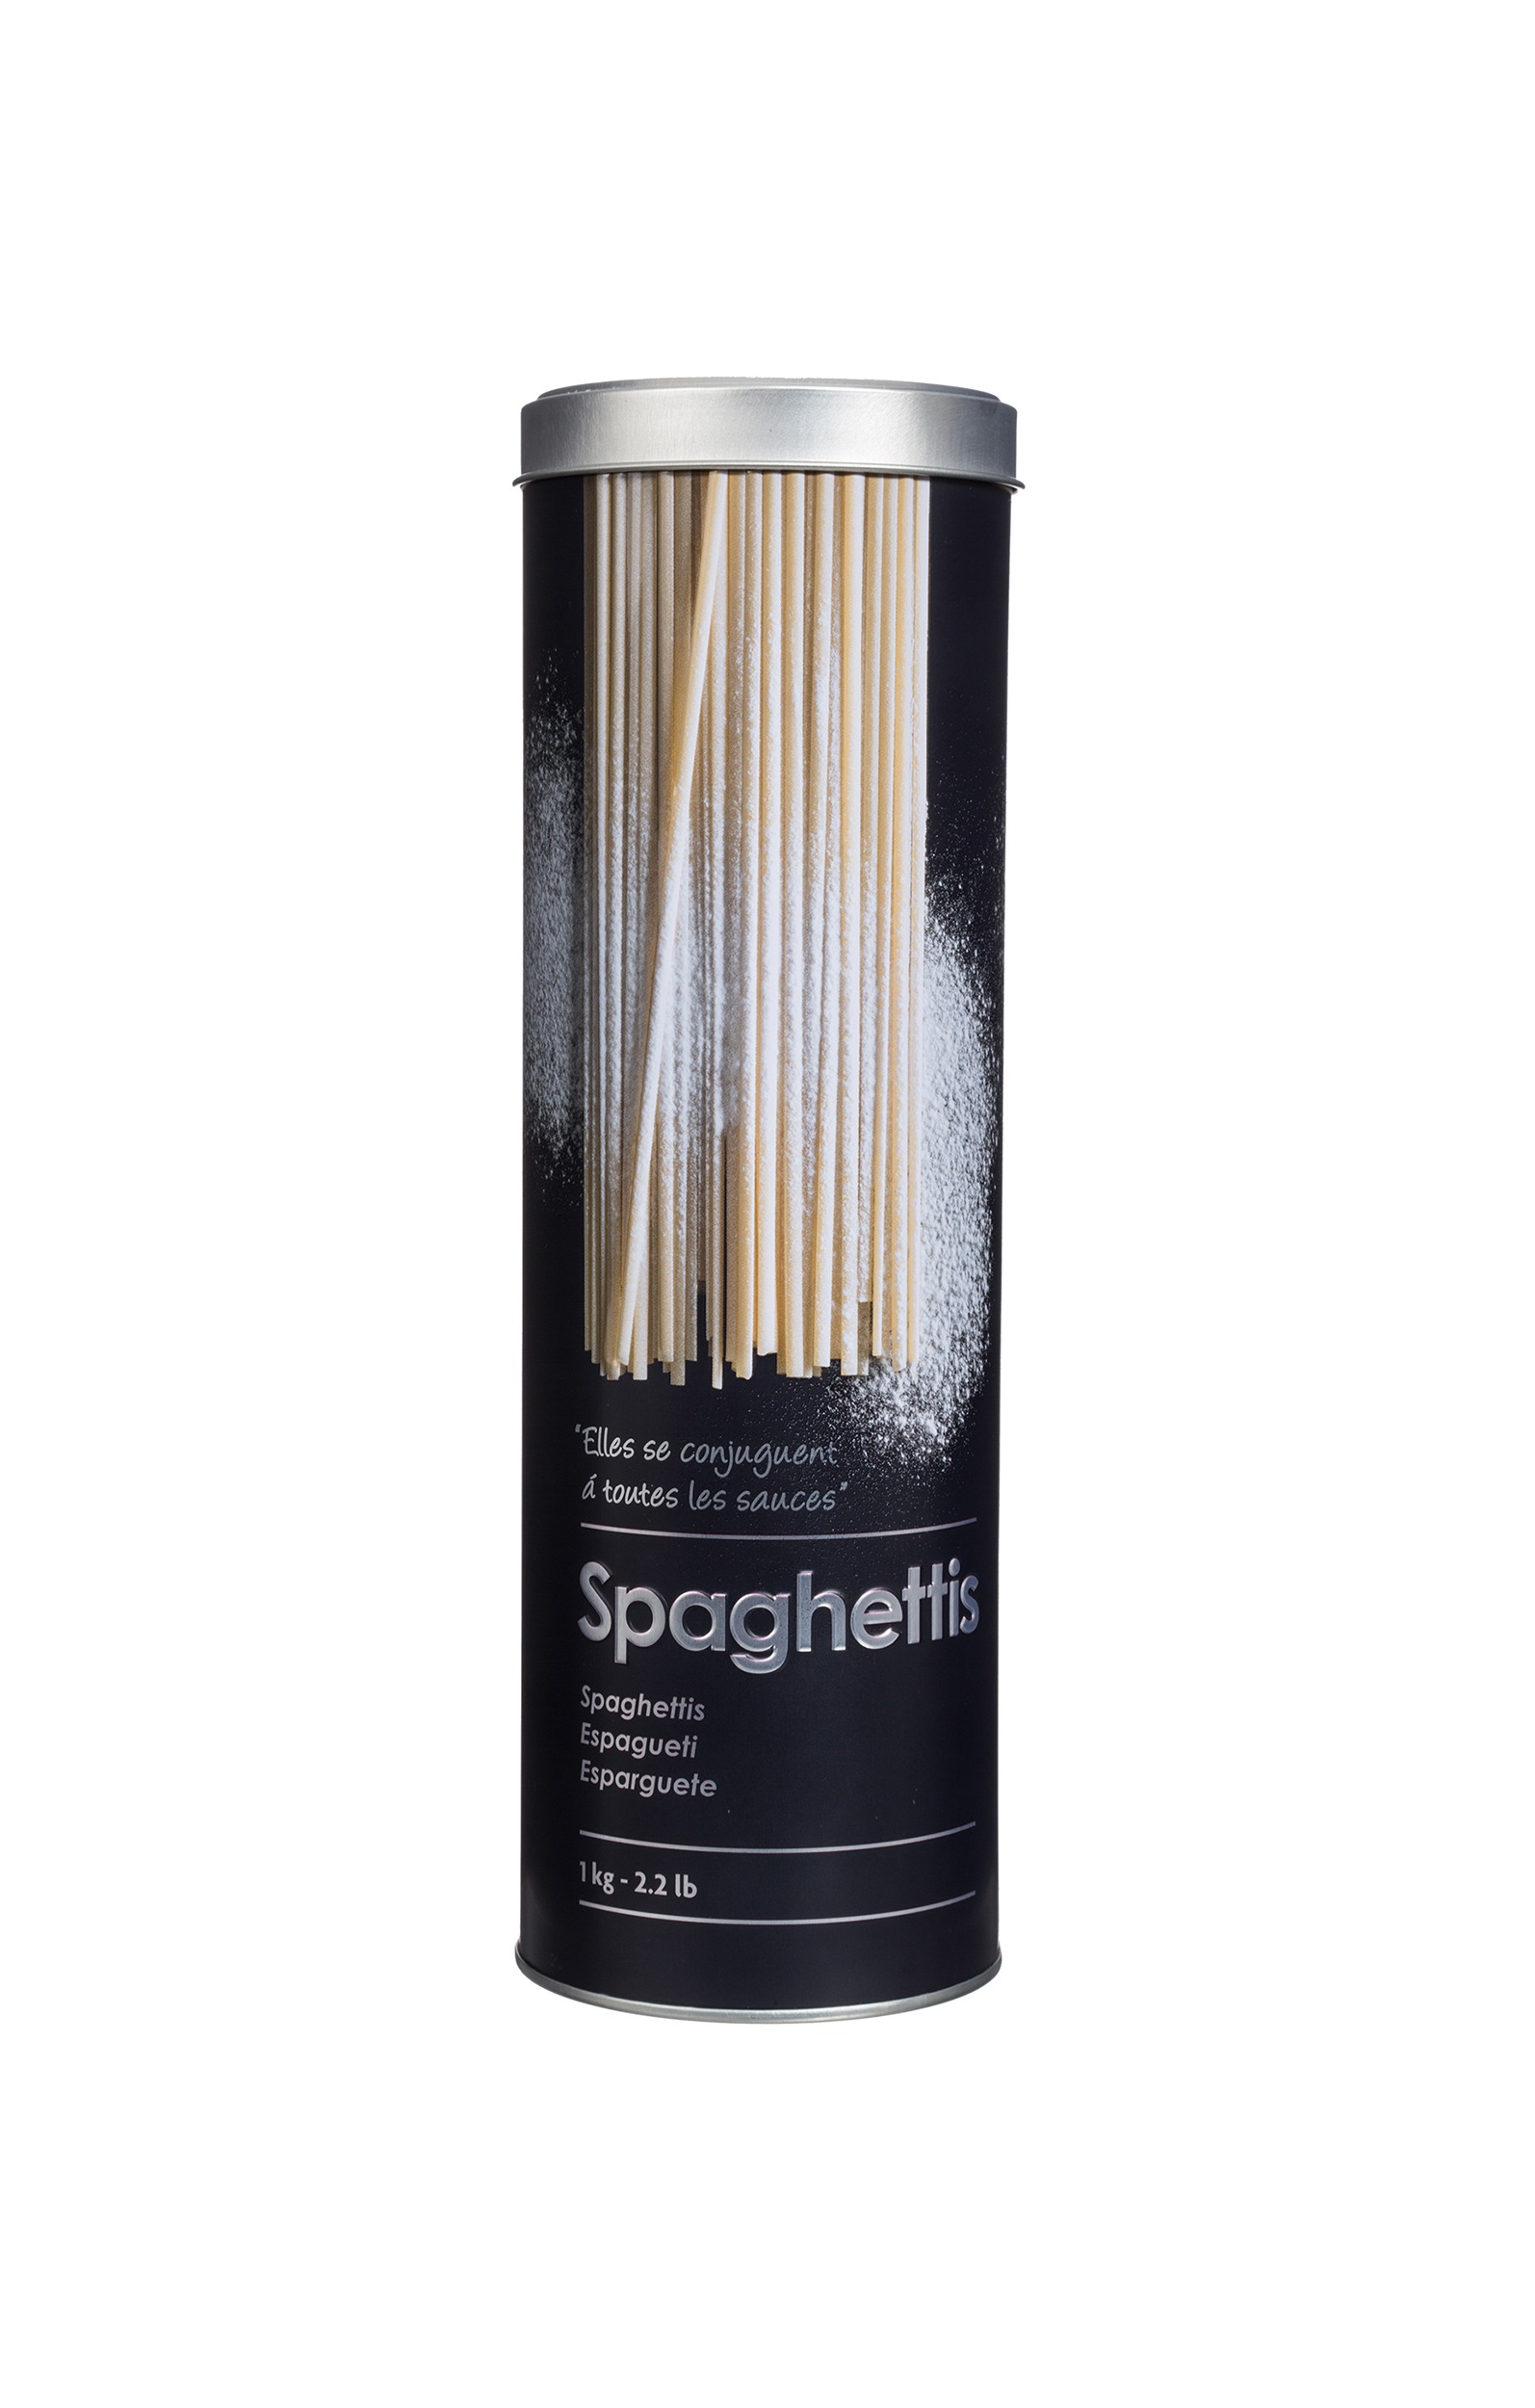 Onderdrukken Onrechtvaardig Voorlopige naam Metalen spaghettiblik met doseerdeksel - Thuisplaza